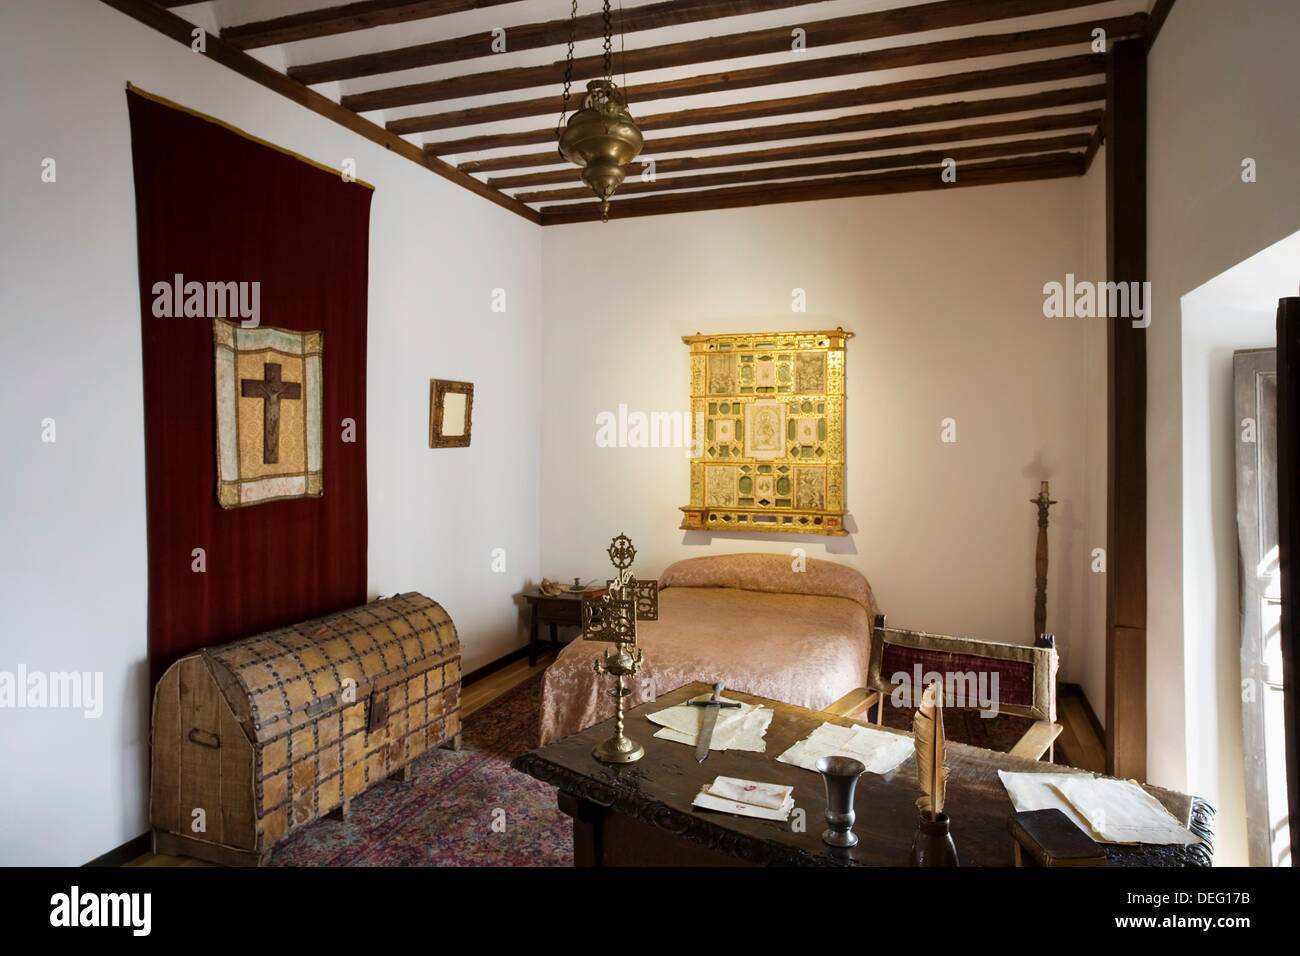 Miguel De Cervante S House Museum Esquivias Toledo Province Stock Photo Alamy